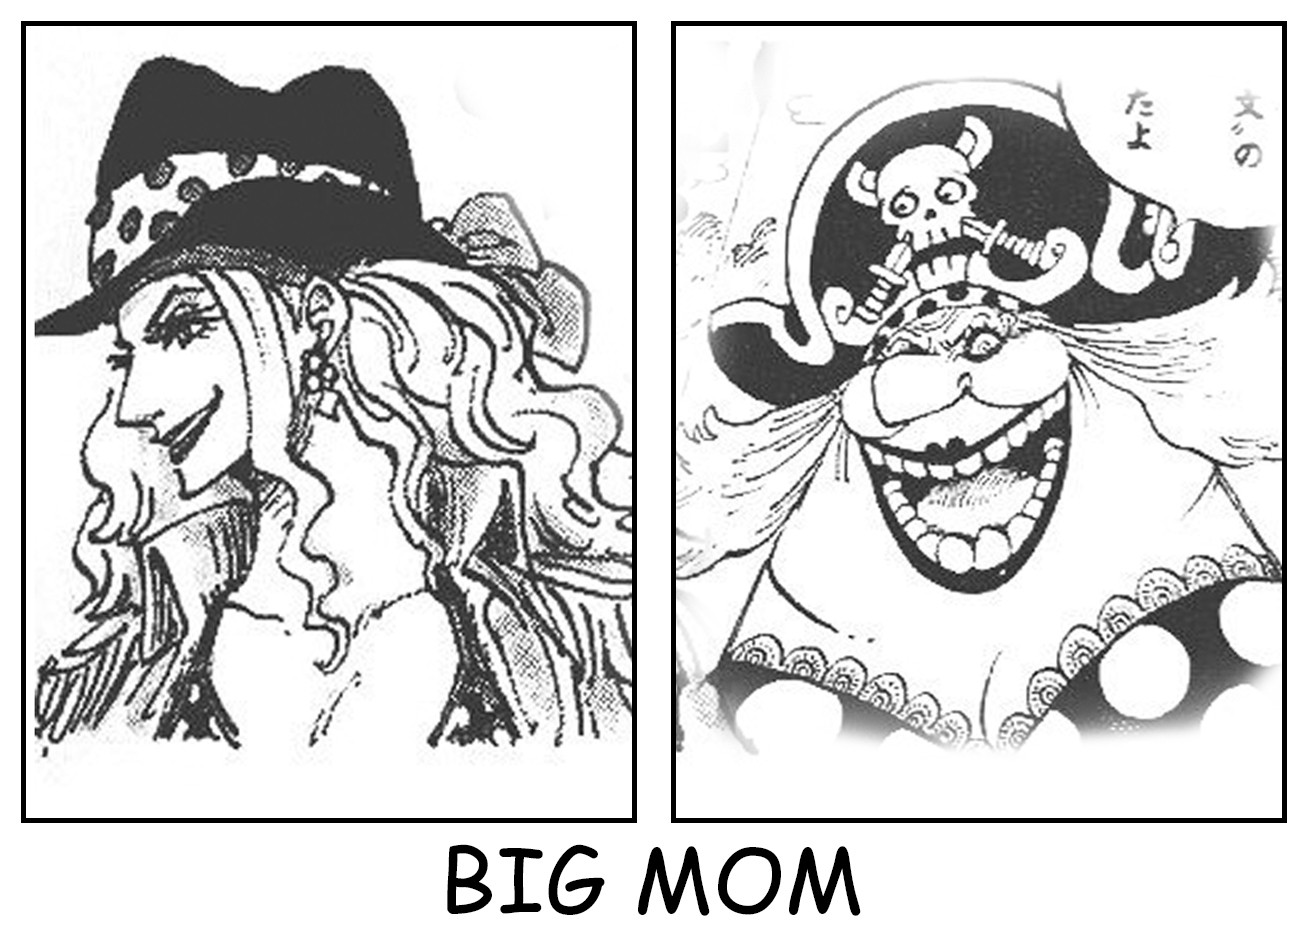 Nhan sắc One Piece: Với những đường nét thanh tú và sắc sảo, nhân sắc One Piece không chỉ bắt mắt mà còn rất tự nhiên và chân thực. Vẻ đẹp của các nhân vật trong One Piece đến từ chính sự khác biệt và cá tính của họ, thể hiện rõ nét qua từng chi tiết trên hình ảnh.